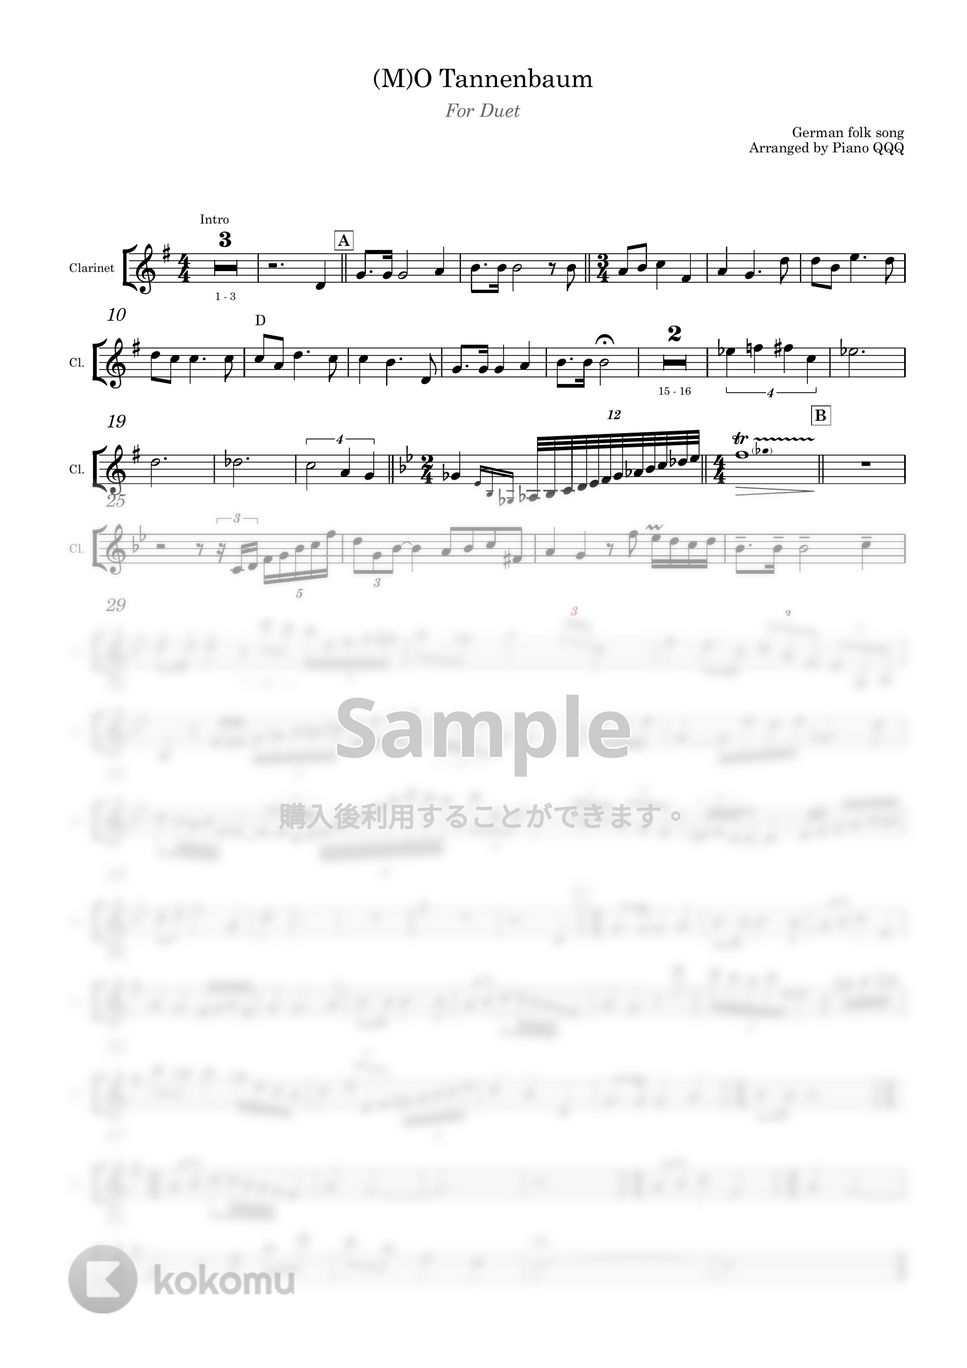 ドイツ民謡 - 松の木 松の木(O Christmas Tree) (デュエット/ピアノと楽器) by Piano QQQ